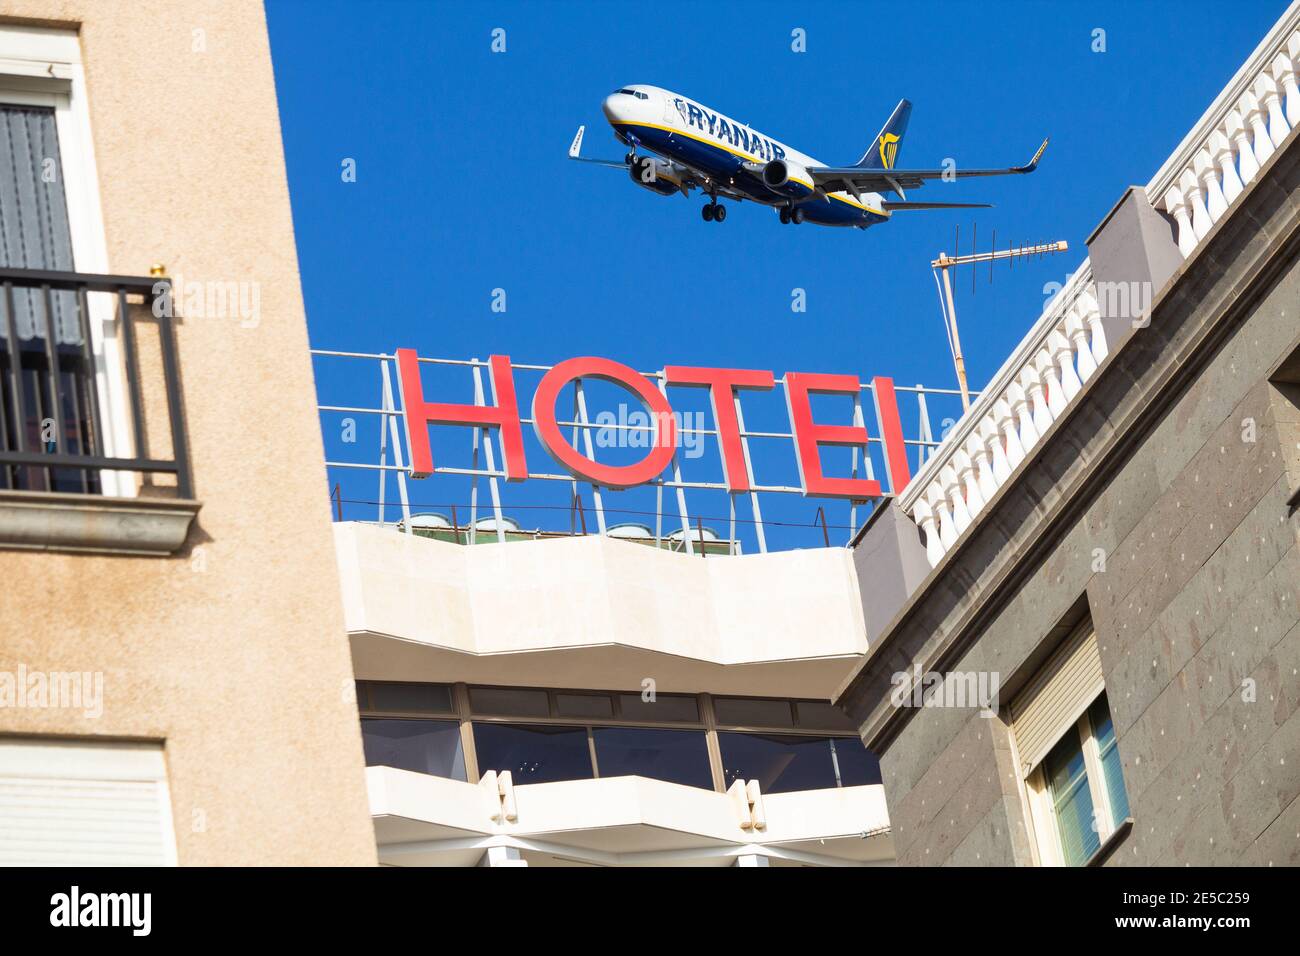 Image composite montrant un avion Ryanair survolant l'hôtel. Quarantaine hôtel, Voyage, industrie aérienne, coronavirus. Banque D'Images